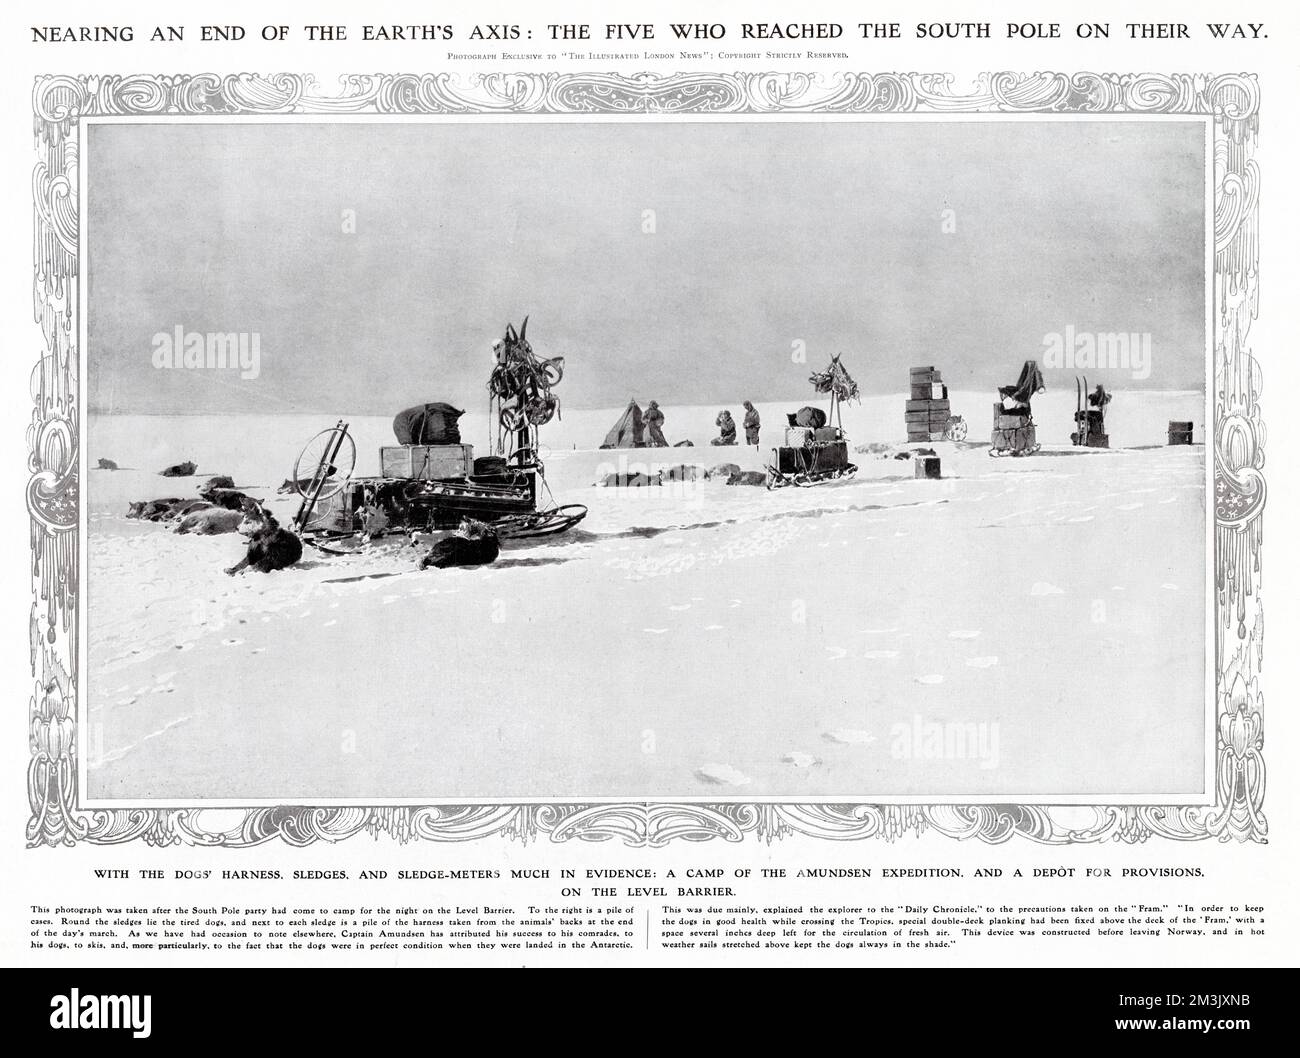 El equipo de trineos de la Expedición Antártica Amundsen acampando en la Barrera de Nivel, en su camino al Polo Sur, 1911. En diciembre de 1911, Roald Amundsen y otros cuatro se convirtieron en los primeros exploradores en llegar al Polo Sur. En primer plano se pueden ver los perros y trineos del equipo y en el fondo, los hombres y su tienda. Foto de stock